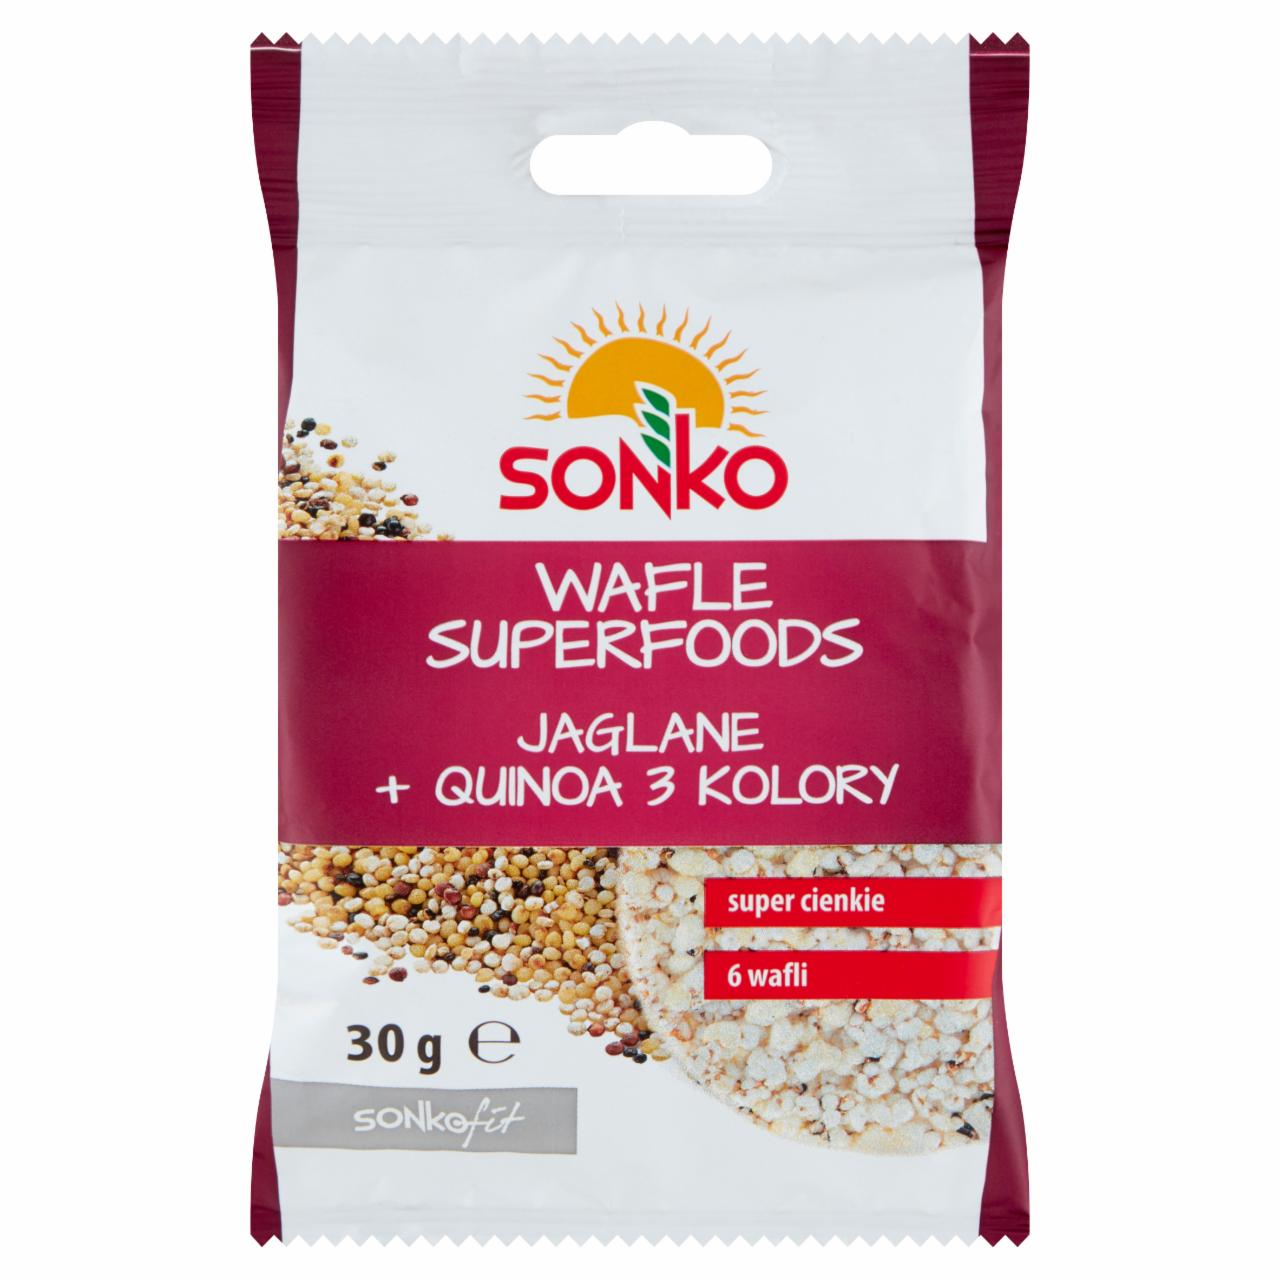 Zdjęcia - Sonko Wafle superfoods jaglane + quinoa 3 kolory 30 g